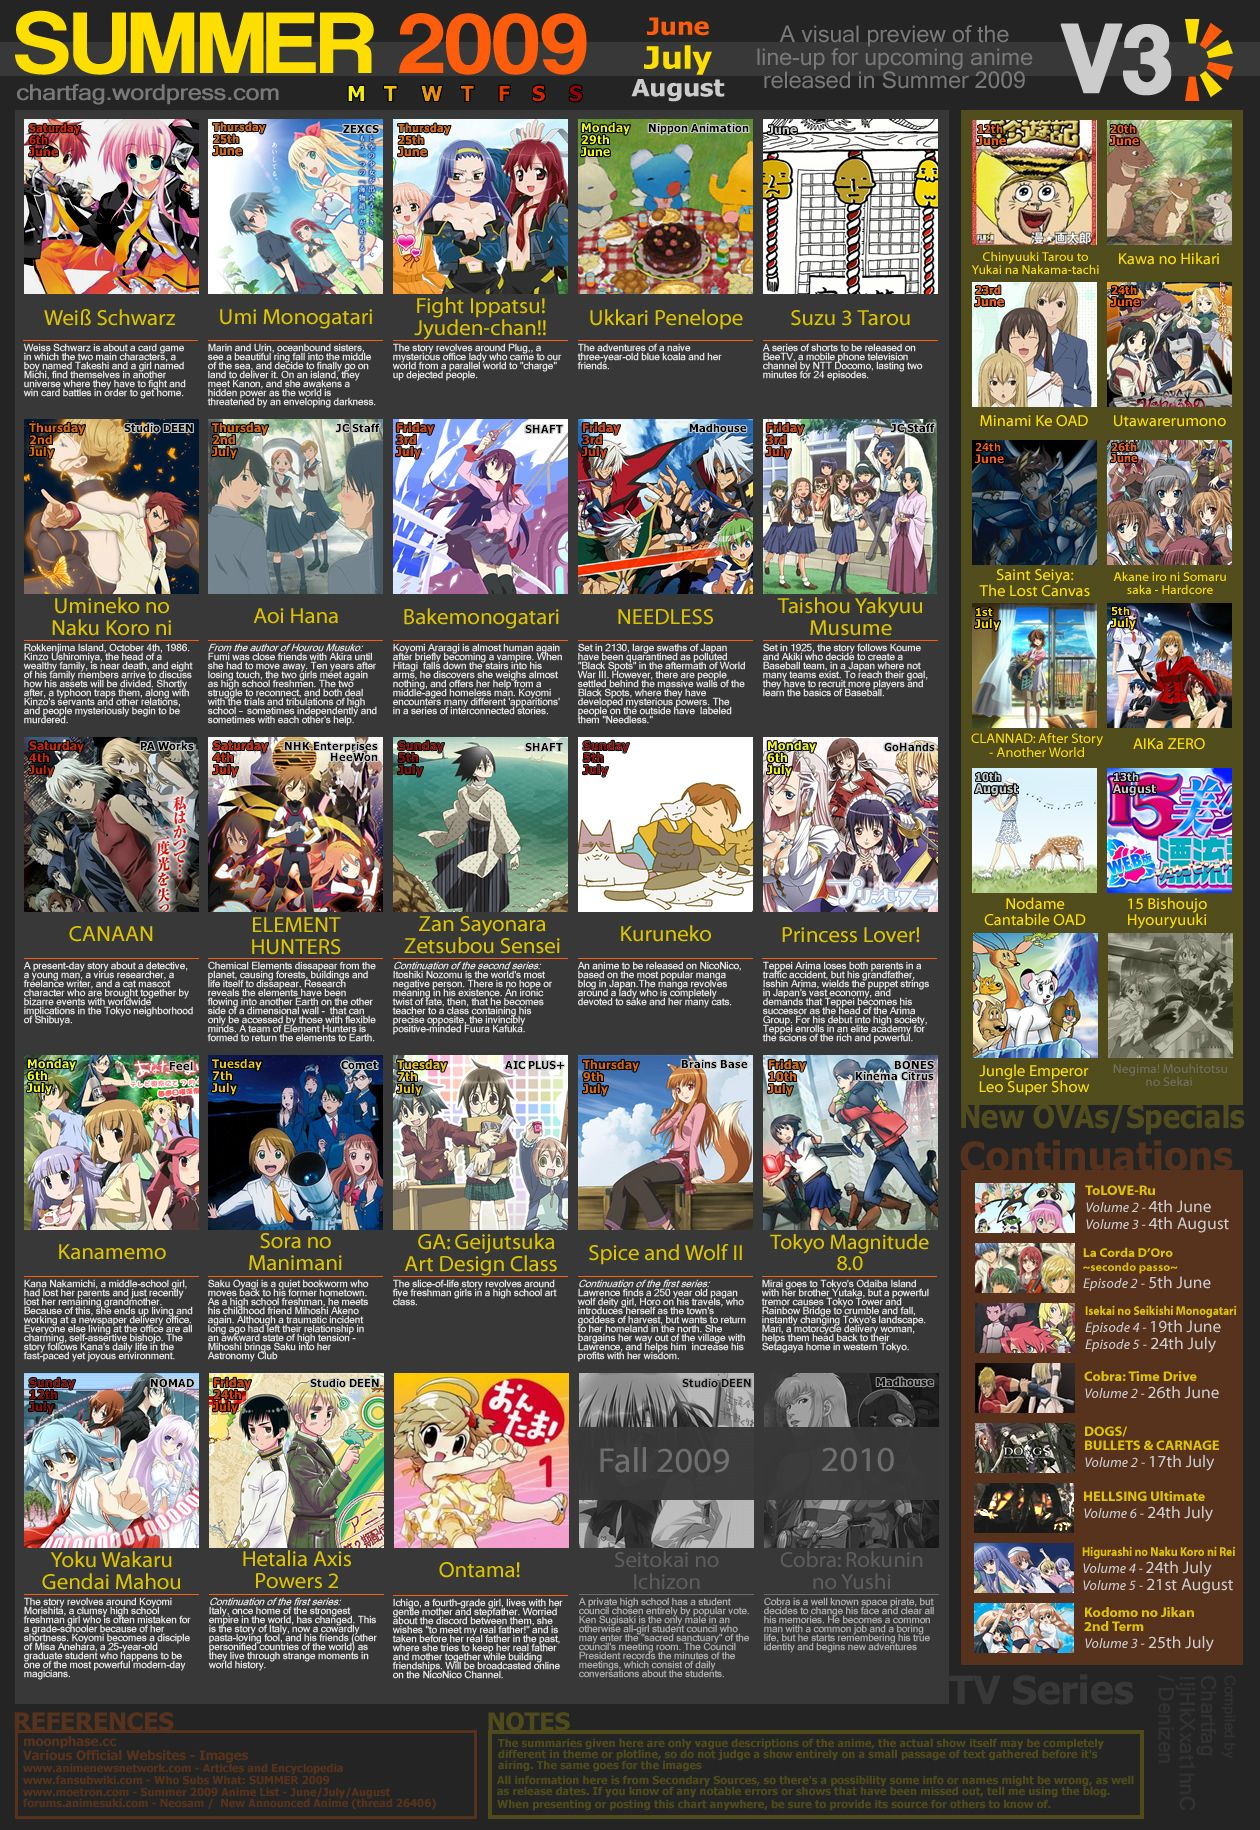 &#91;INFO&#93; List Anime